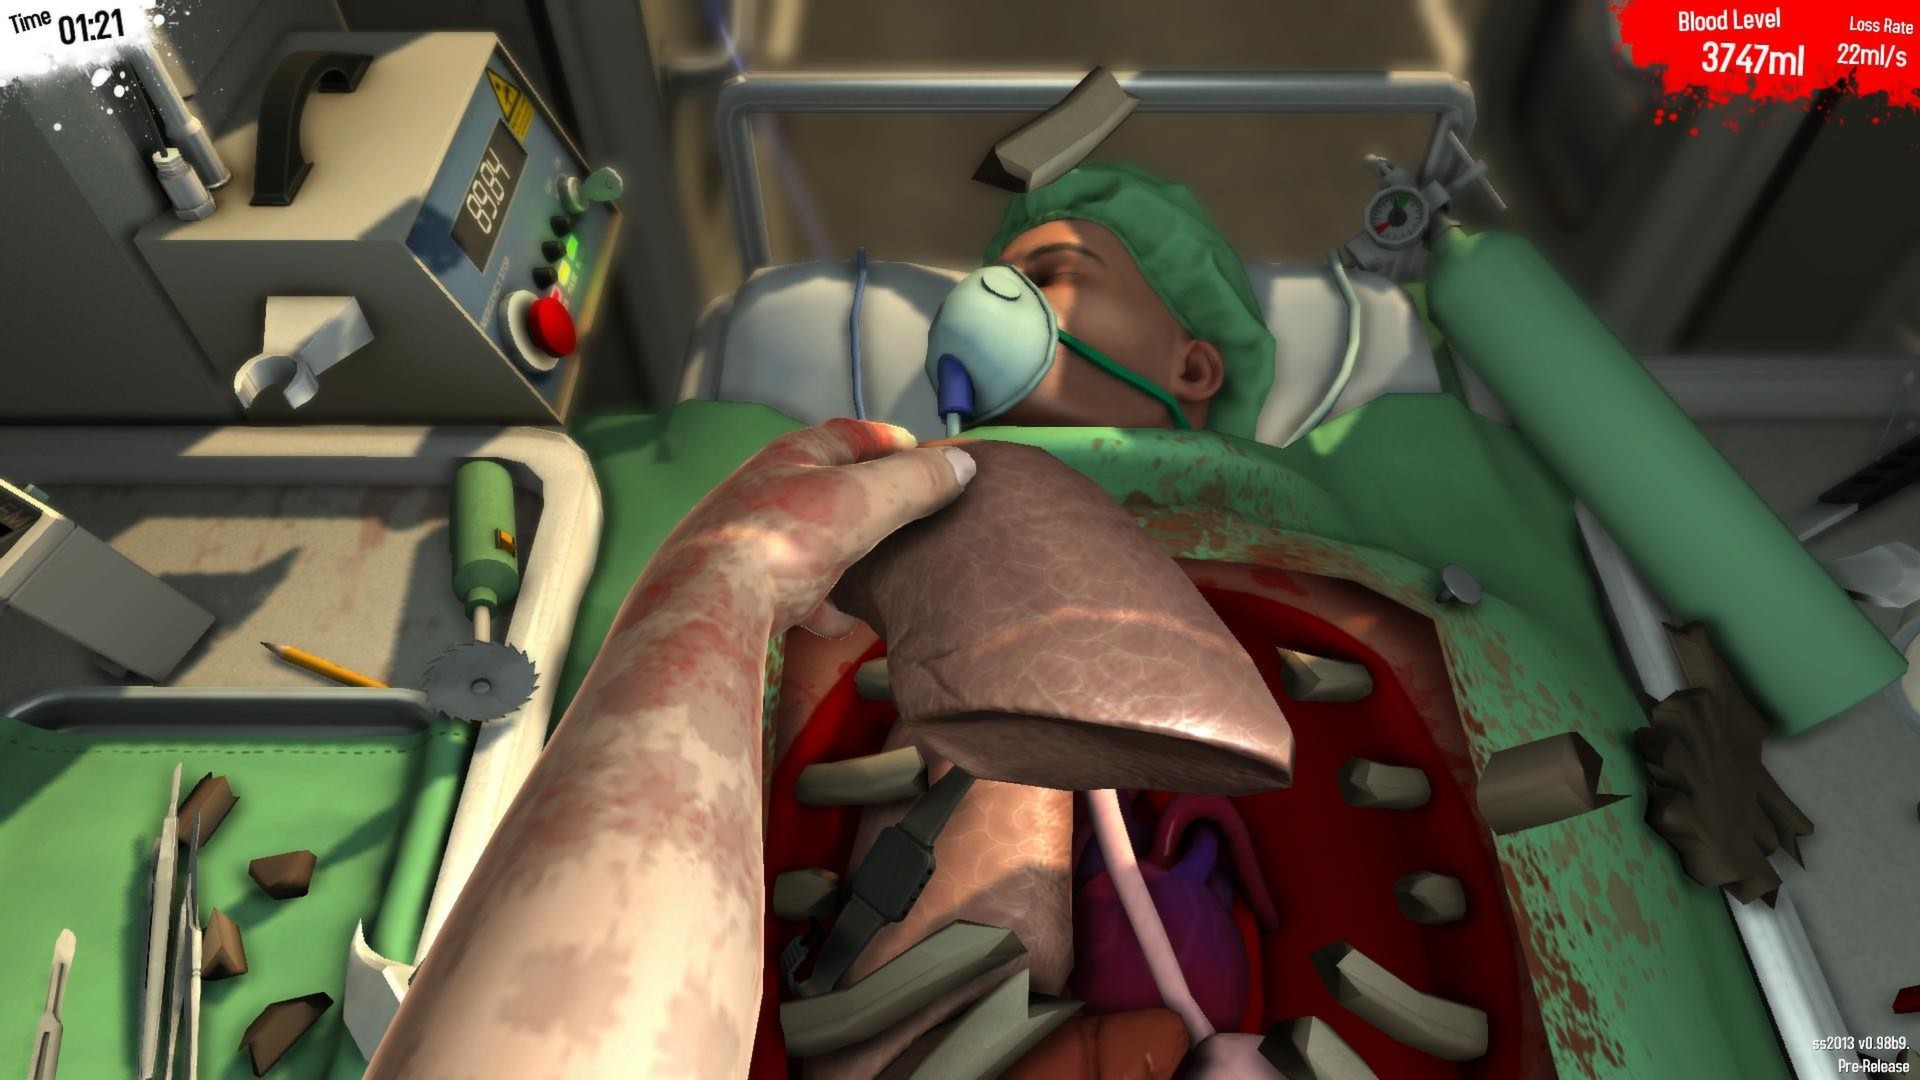 Save 75% on Surgeon Simulator on Steam